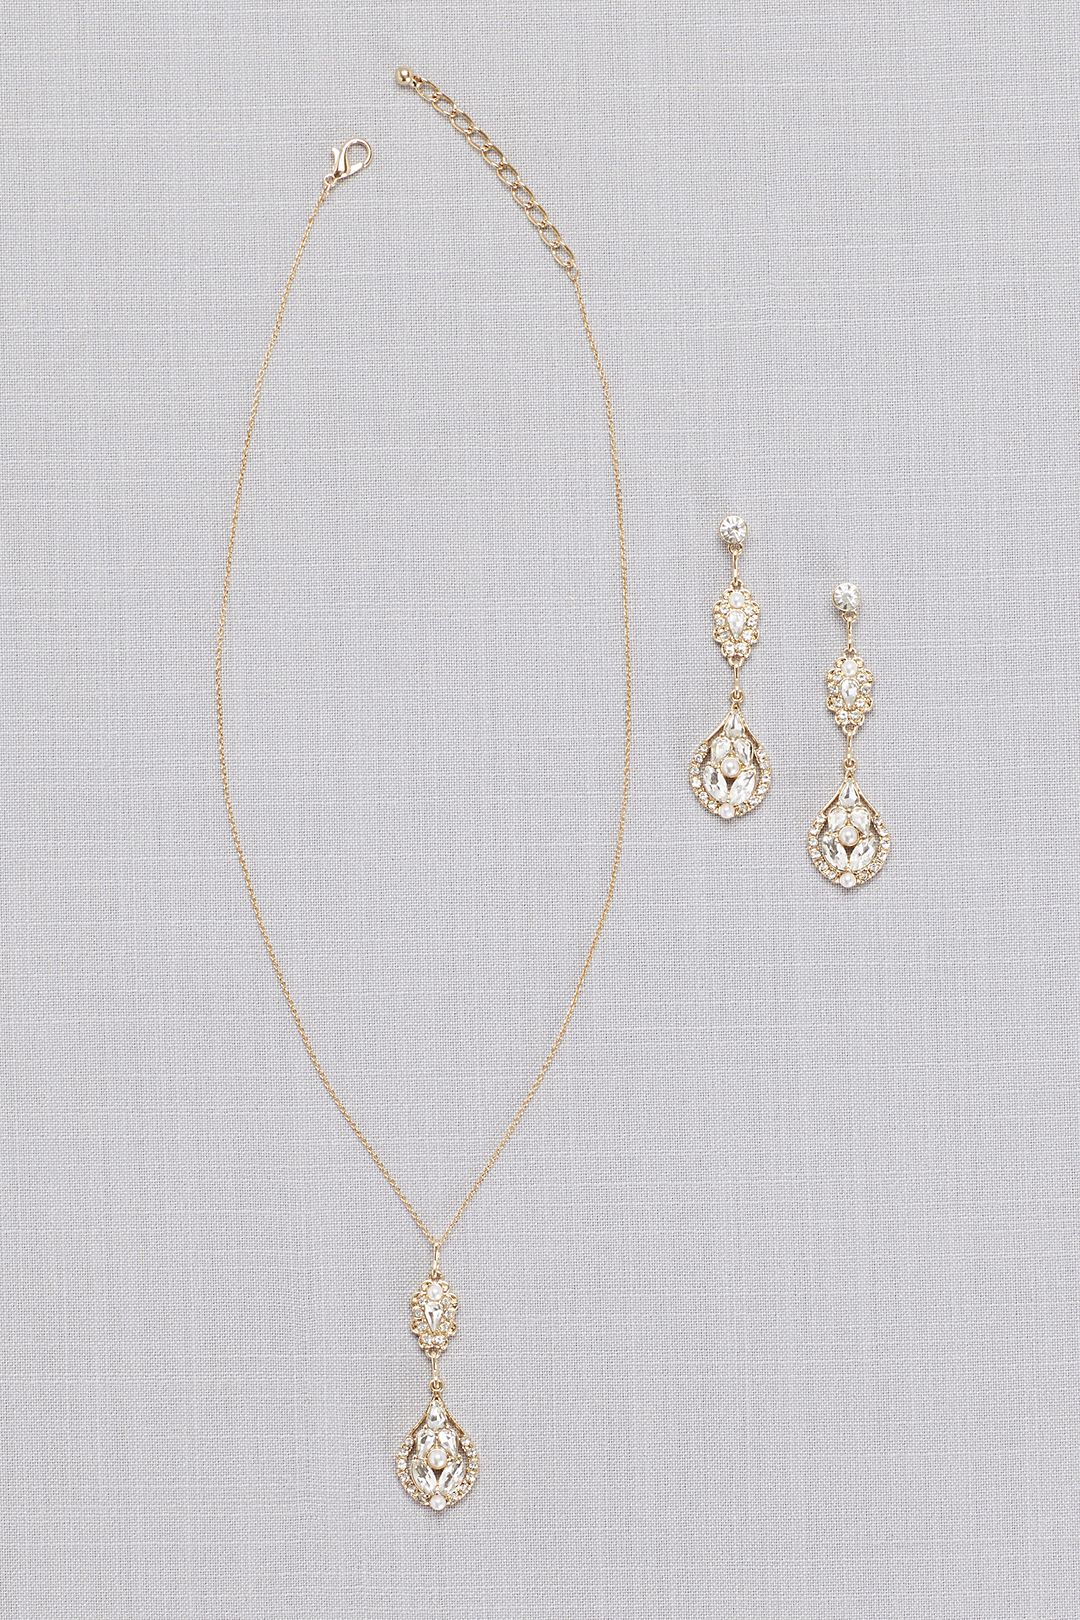 Vintage-Inspired Crystal Cluster Necklace Image 4